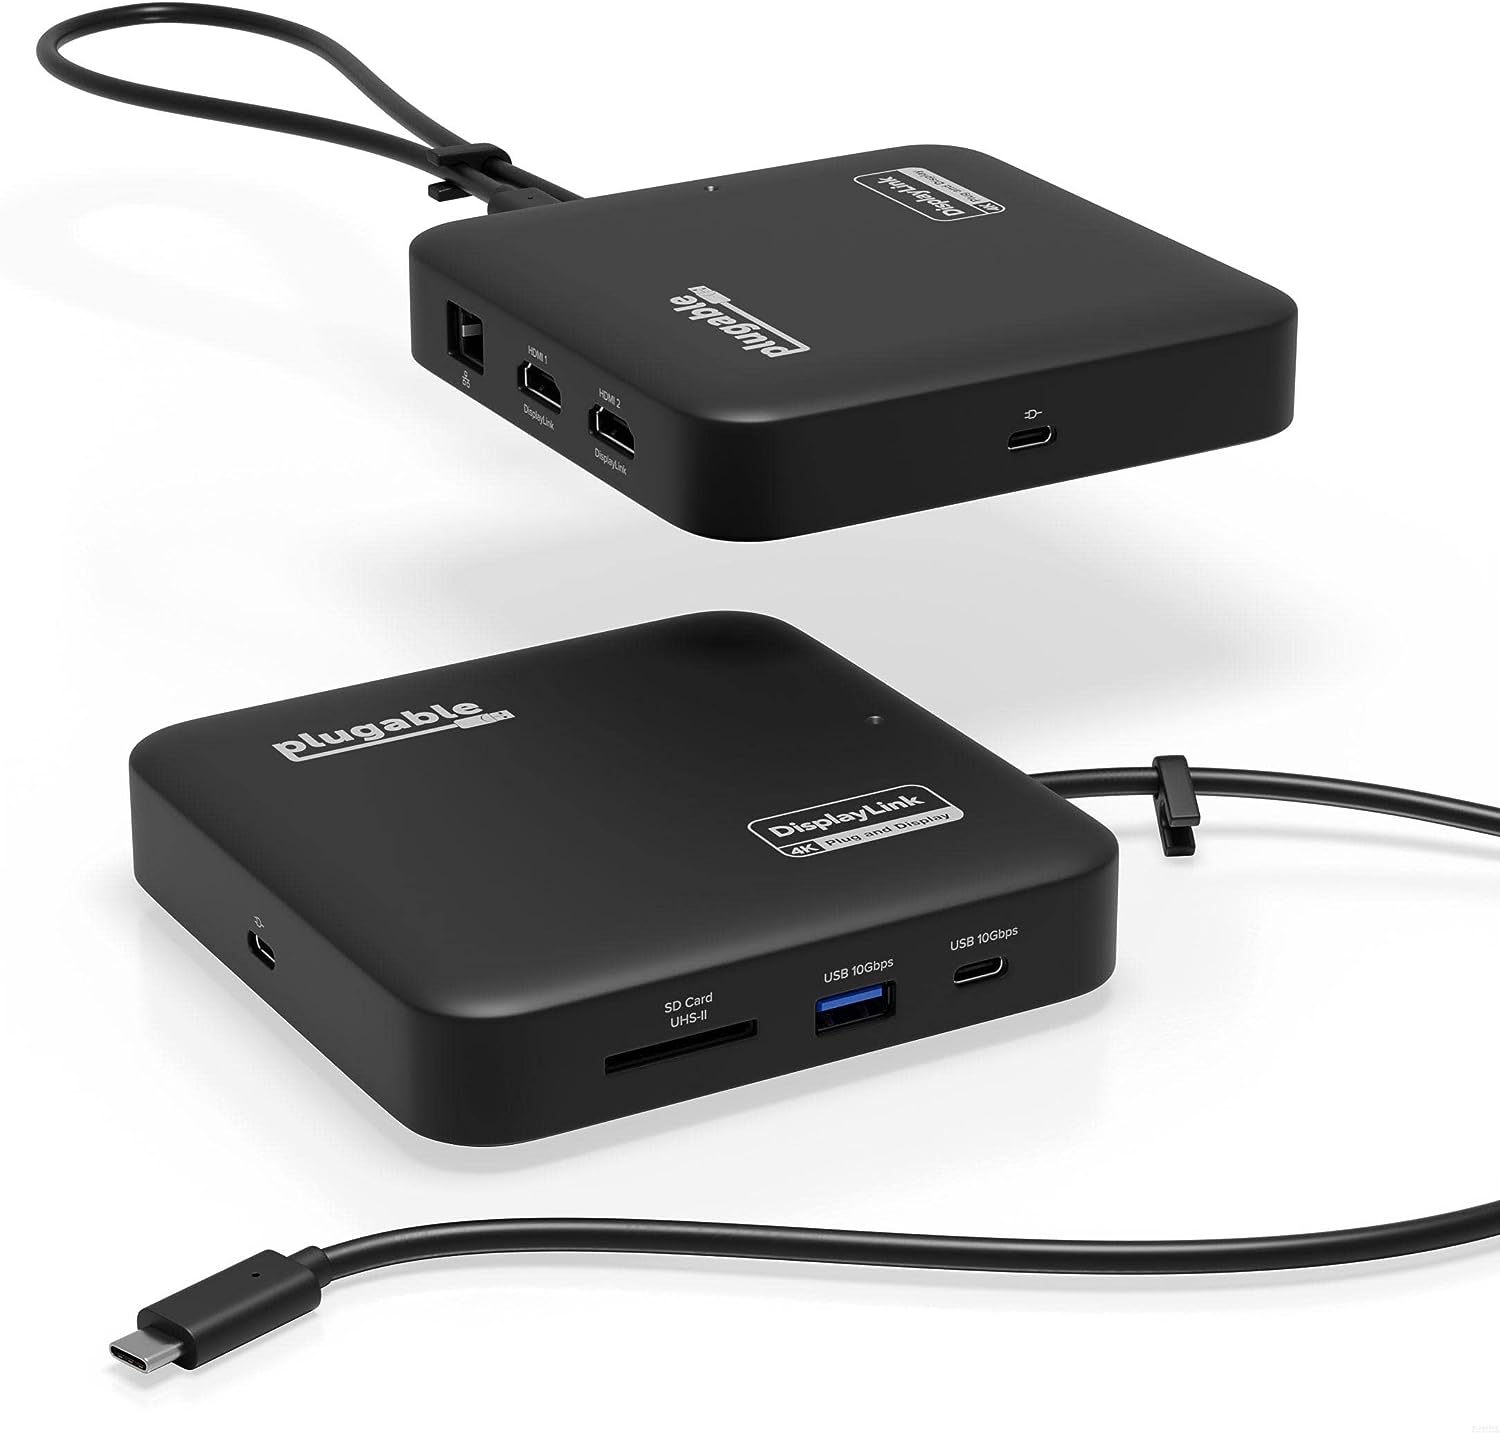 4美國直購] Plugable USBC-6950PDZ 7合1顯示器擴充埠(1入) USB-C